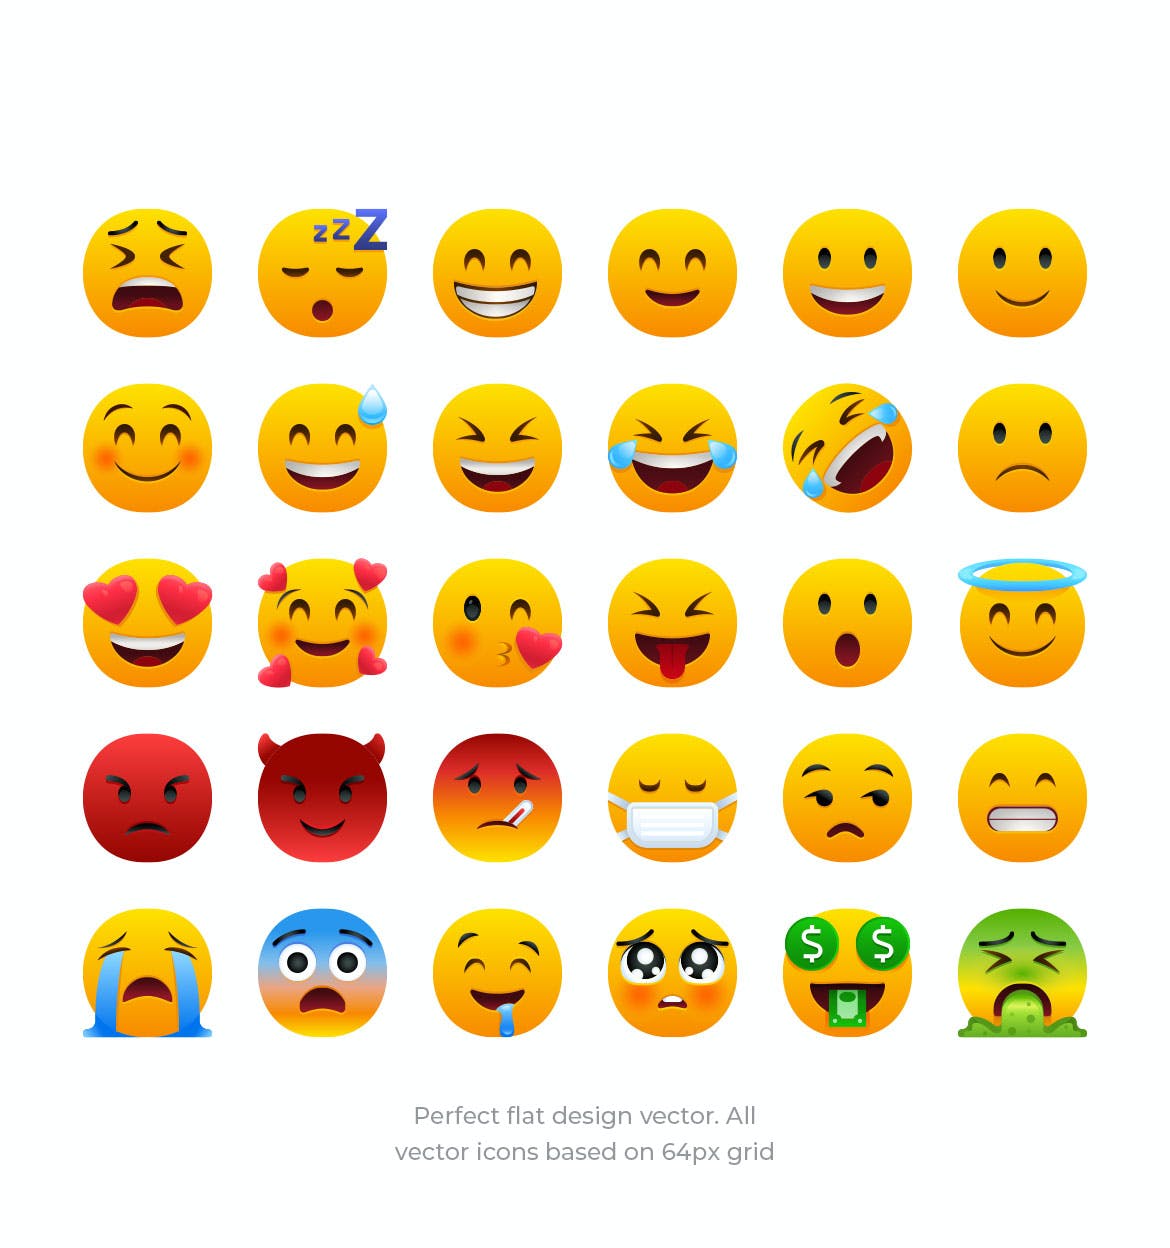 可编辑矢量30个Emoji表情符号扁平图标免费下载(图1)